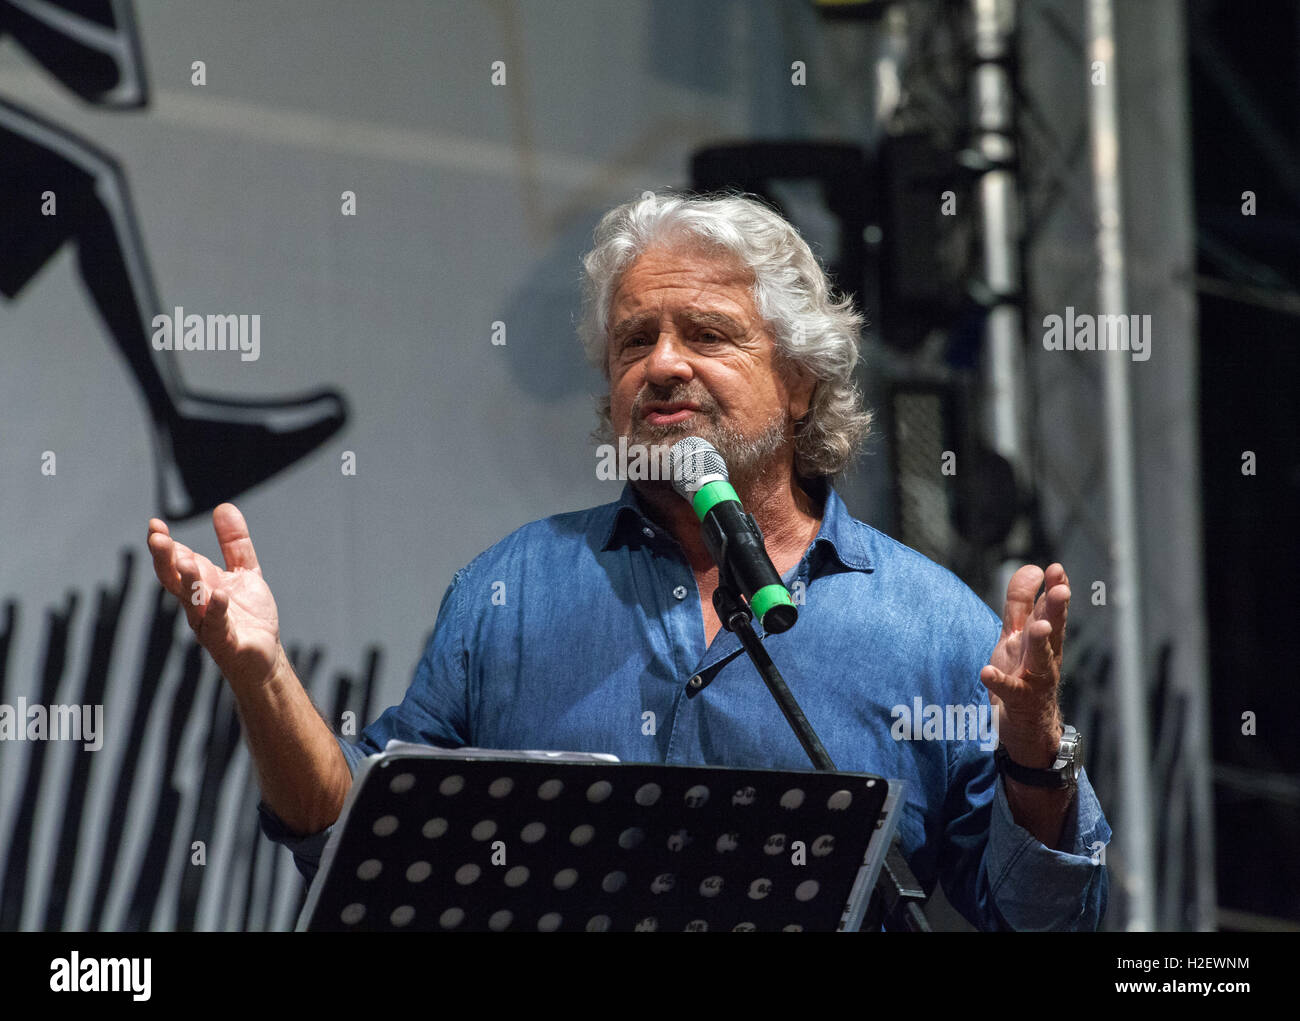 Beppe Grillo prend la parole lors d'un rassemblement public pour le M5S La réunion nationale sur le 24 septembre 2016 à Palerme, Italie. Banque D'Images